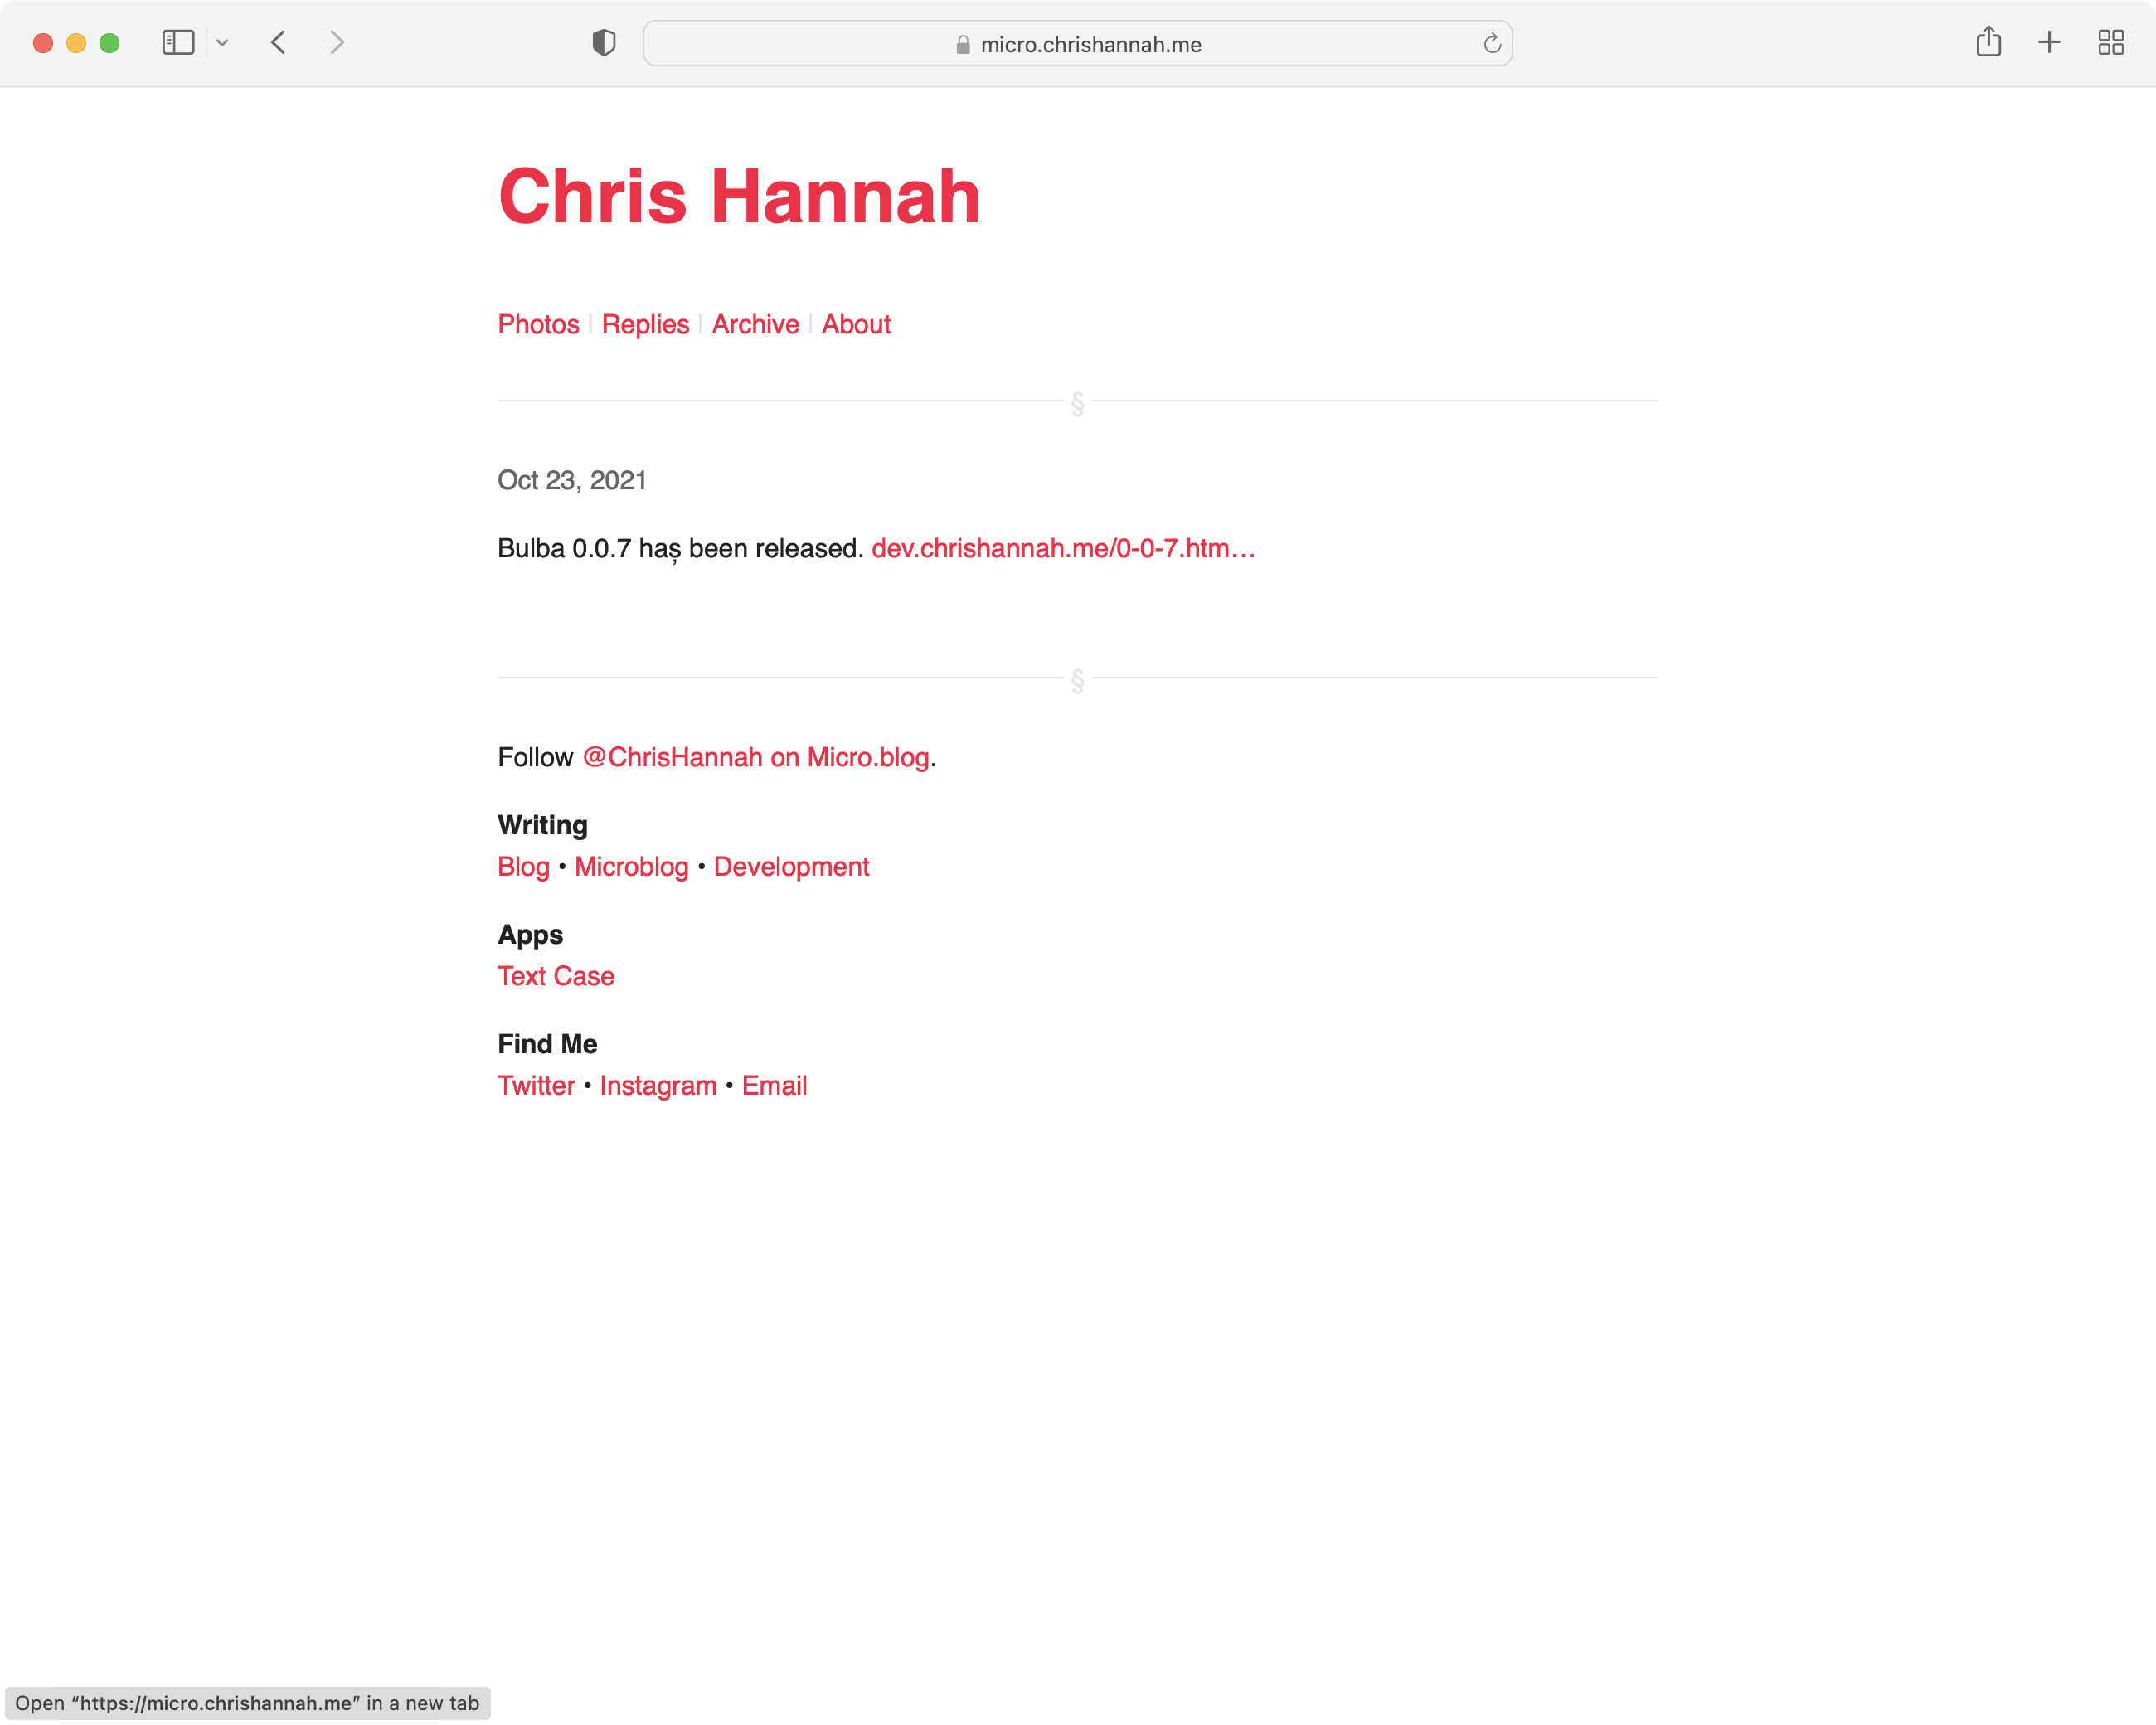 Chris Hannah's site in light mode.